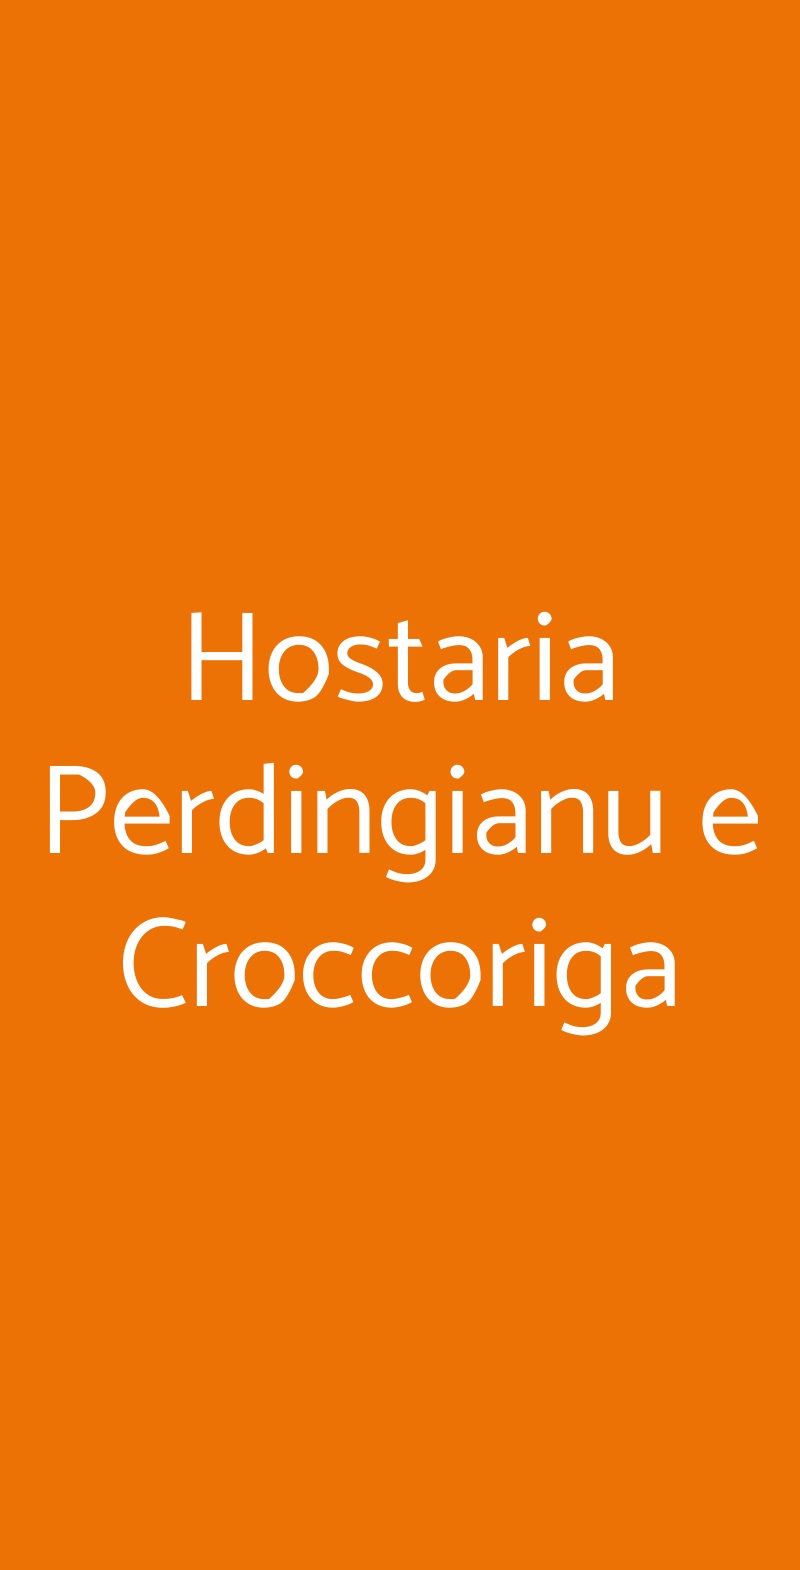 Hostaria Perdingianu e Croccoriga Roma menù 1 pagina